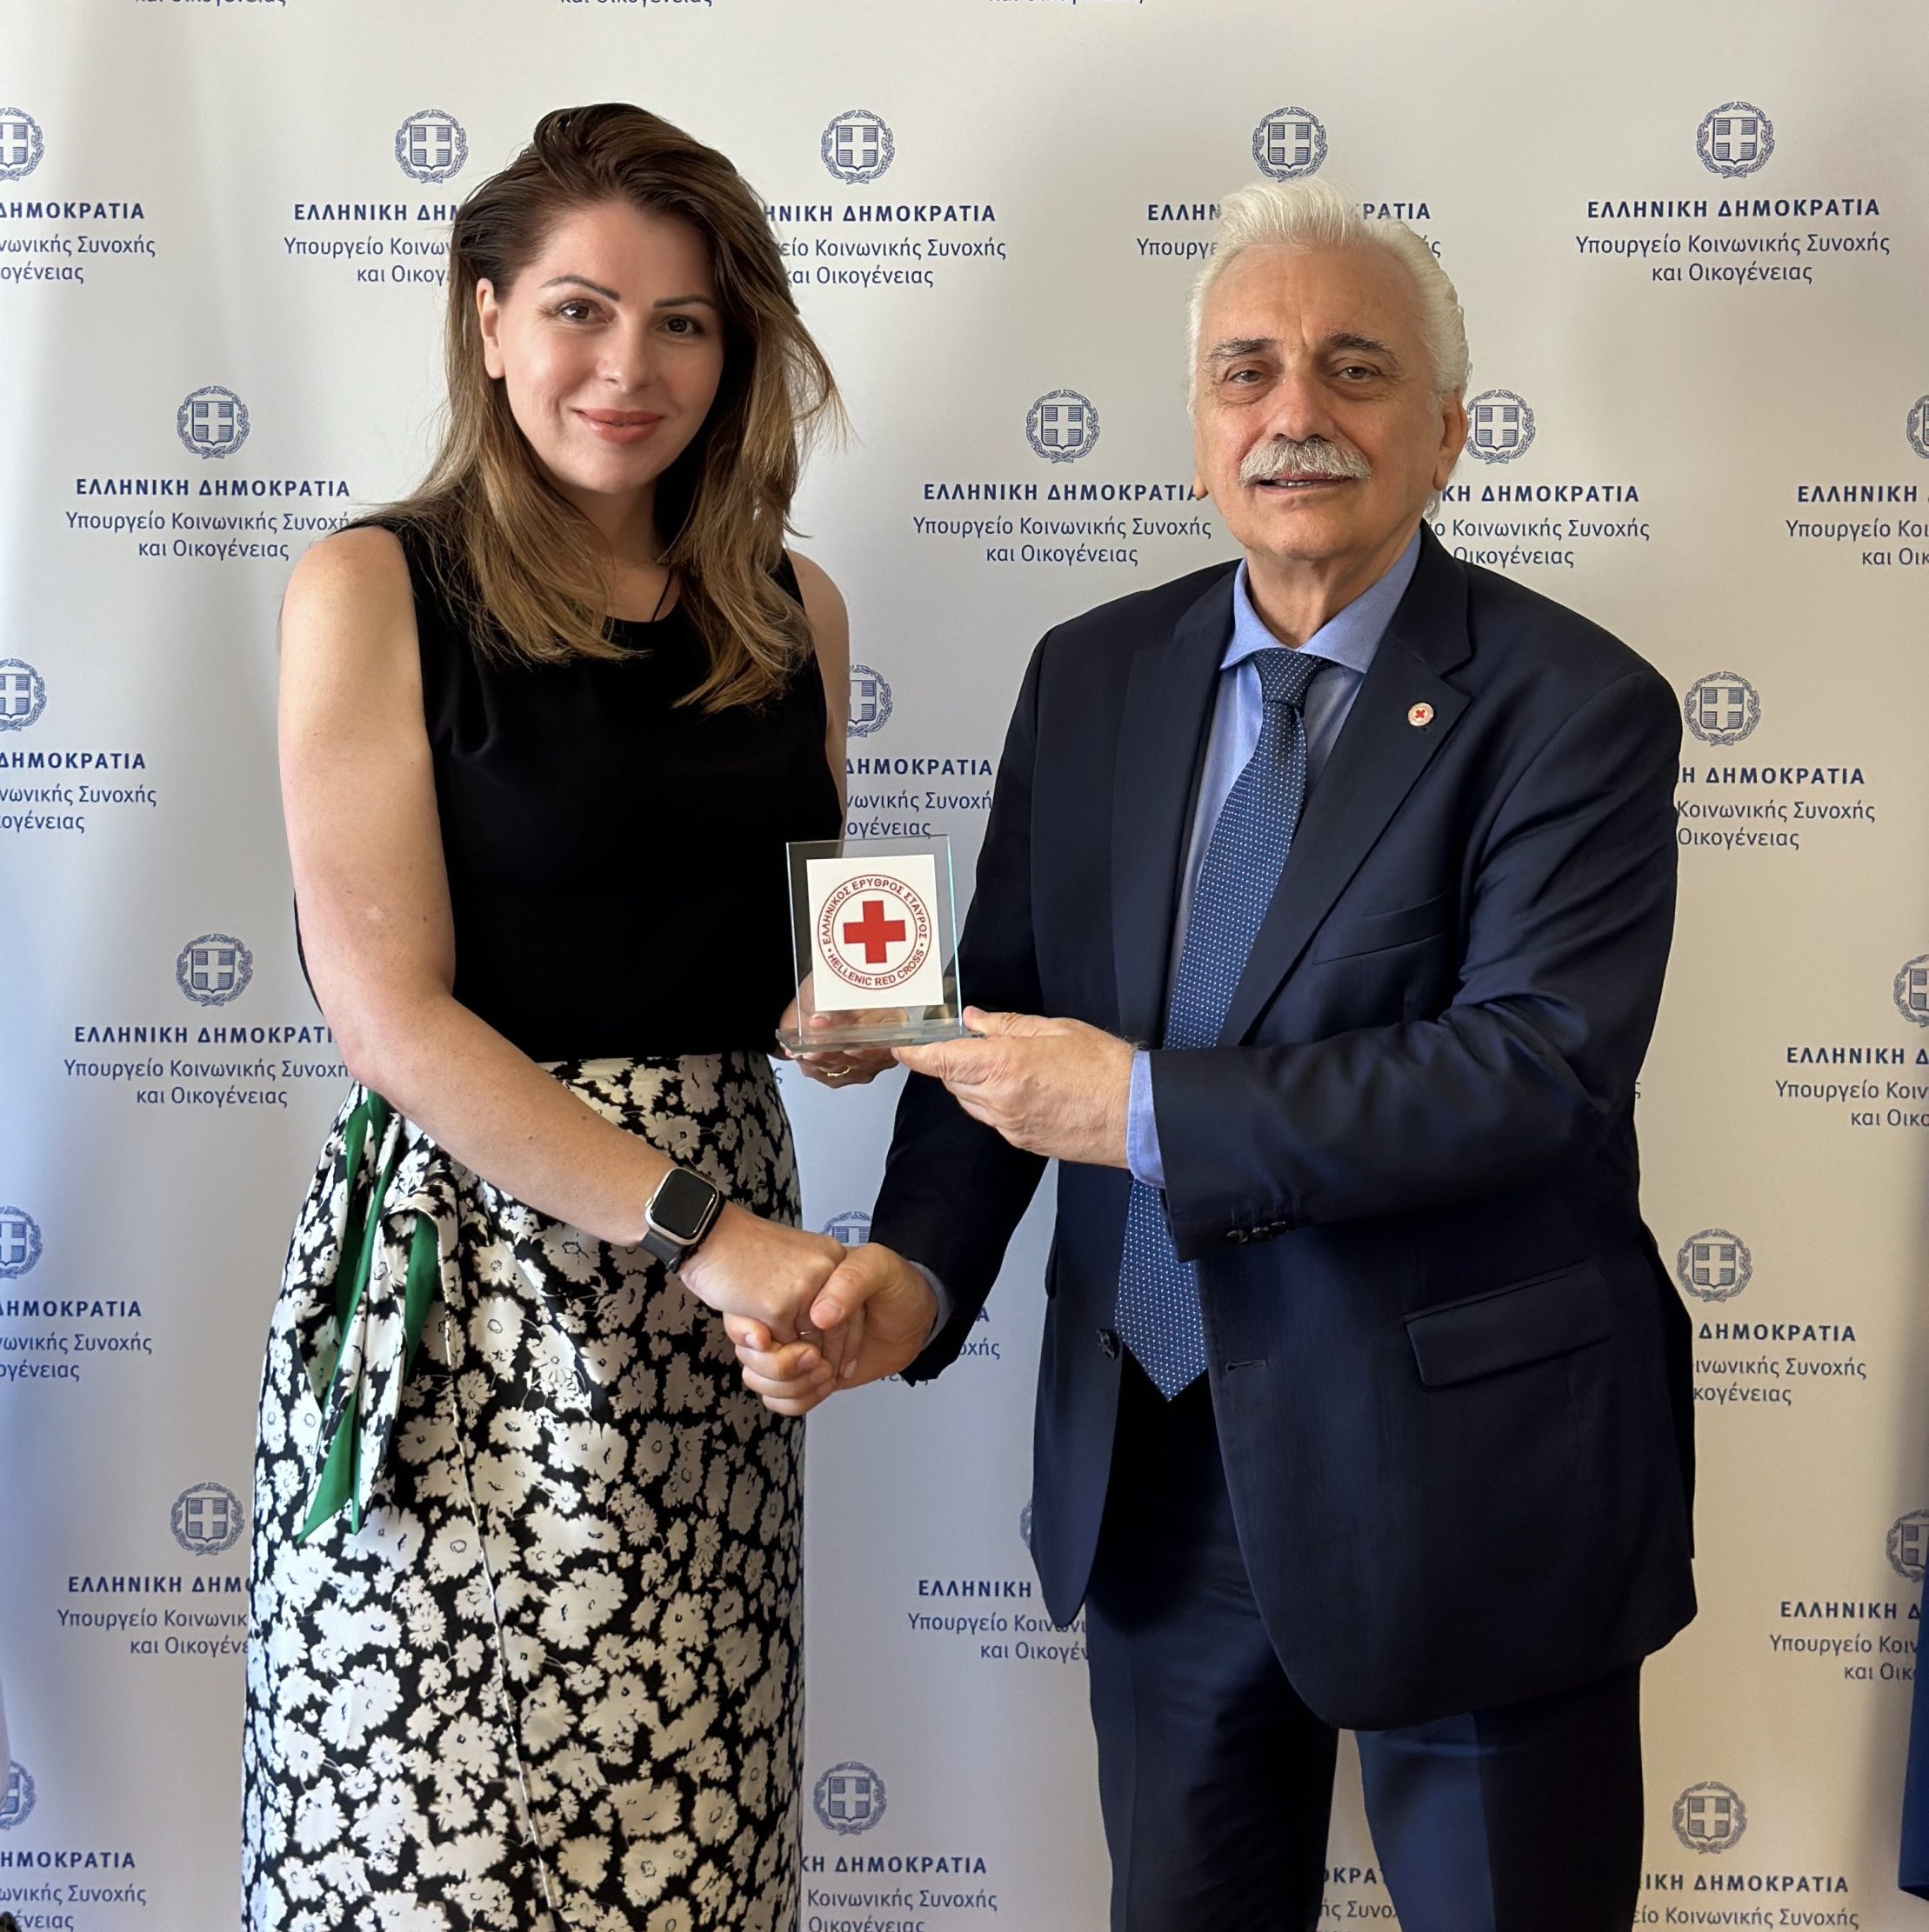 Ο Πρόεδρος του Ελληνικού Ερυθρού Σταυρού συναντήθηκε με την Υφυπουργό Κοινωνικής Συνοχής και Οικογένειας